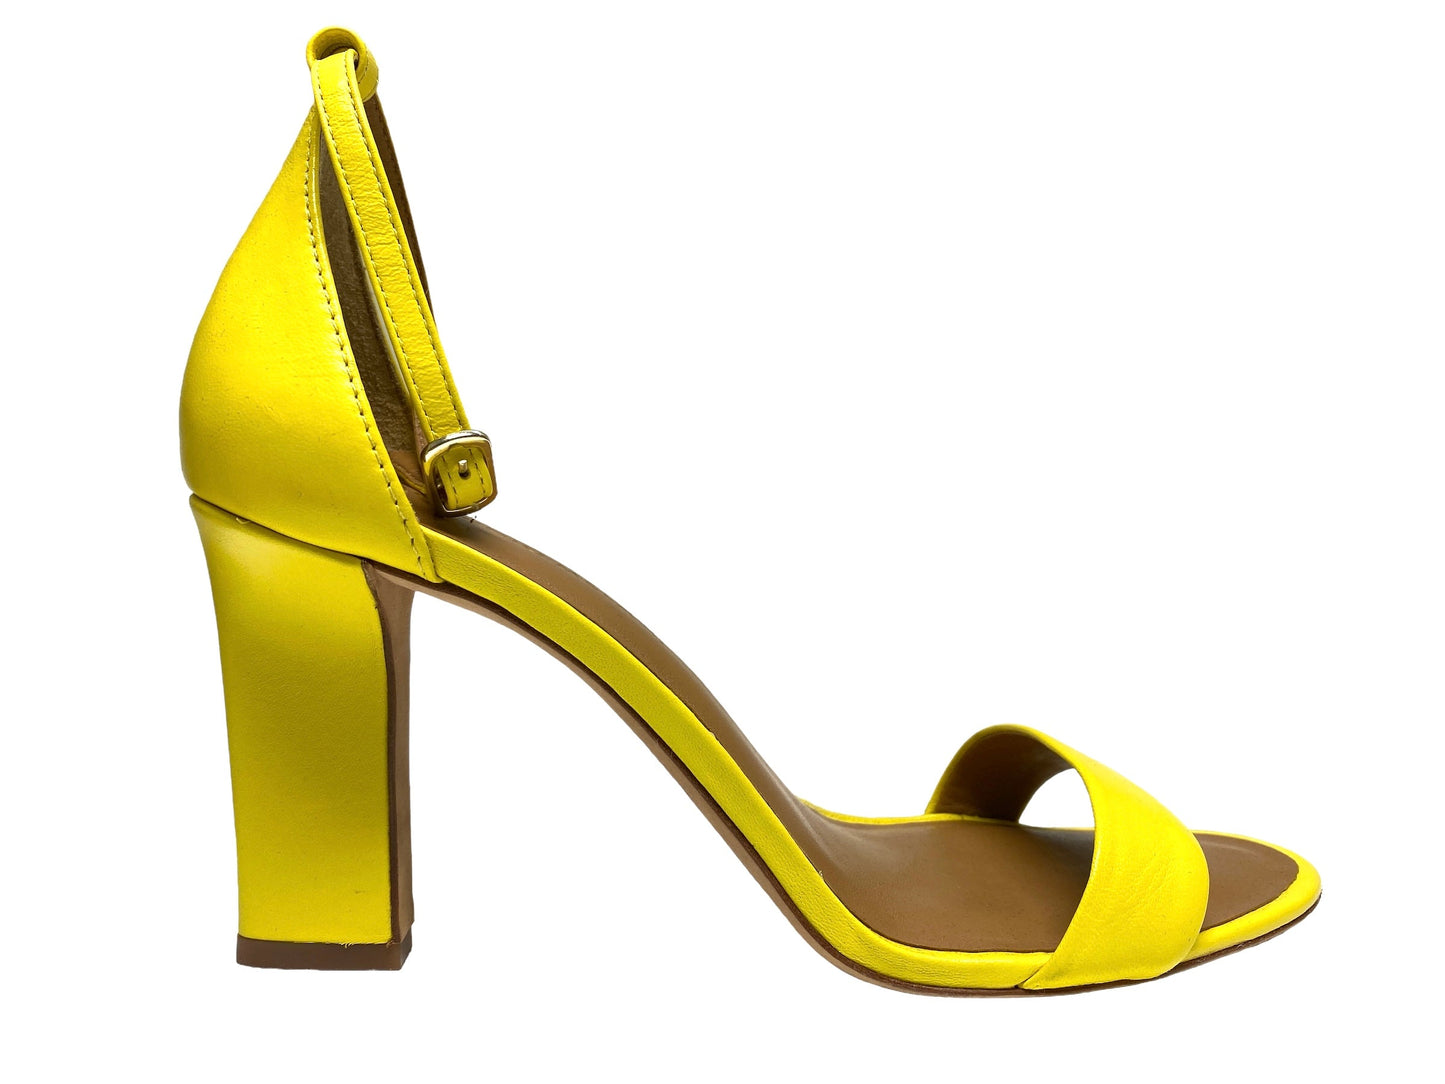 Sandals Heels Stiletto By Zara  Size: 10